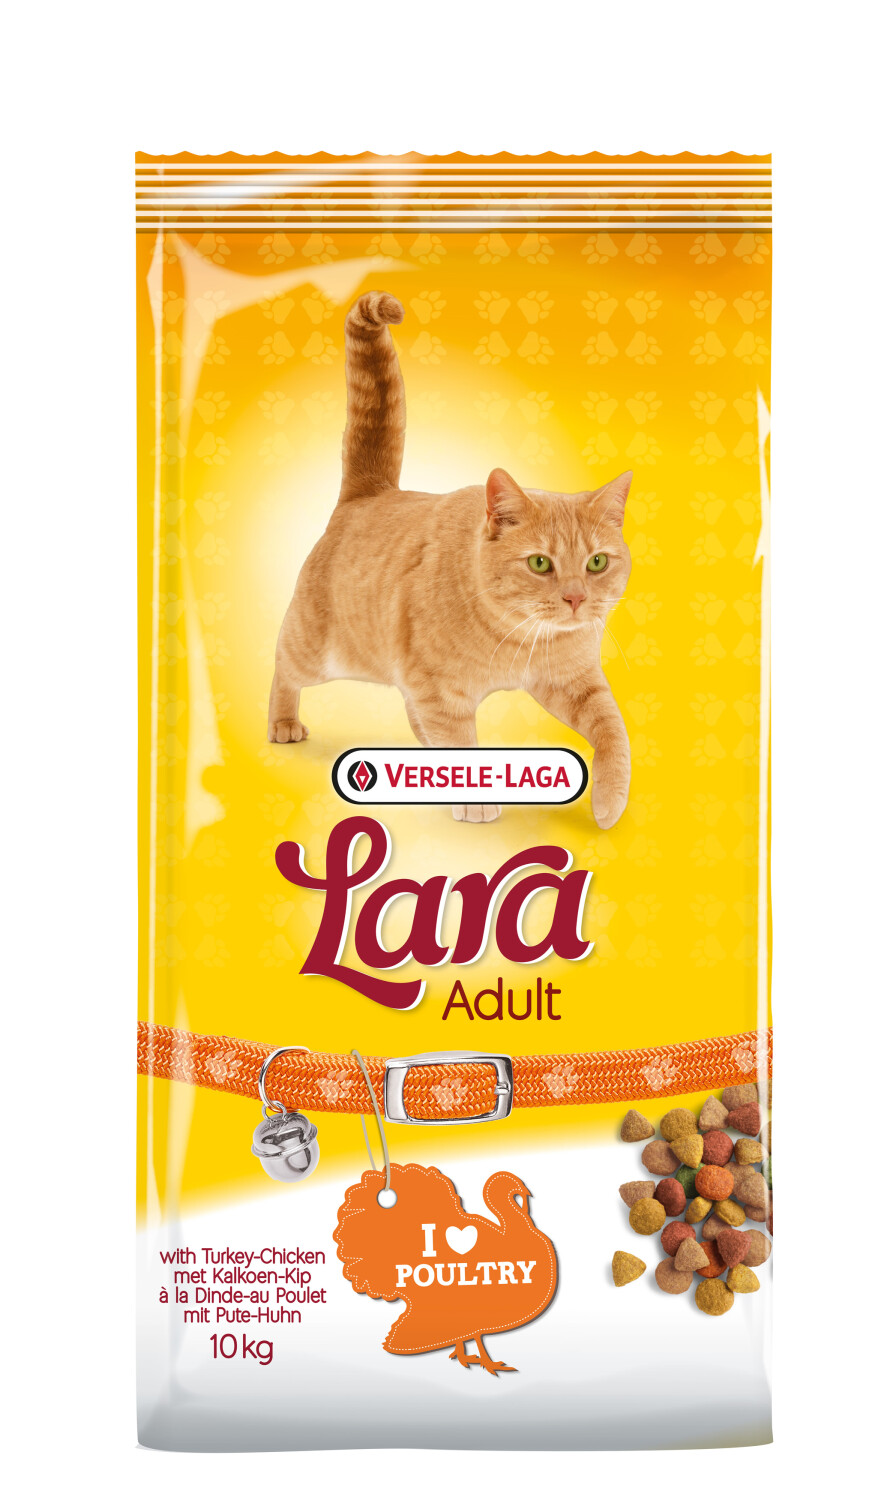 Afbeelding Versele-Laga Lara Gevogelte kattenvoer 10 kg door Tuinadvies.be